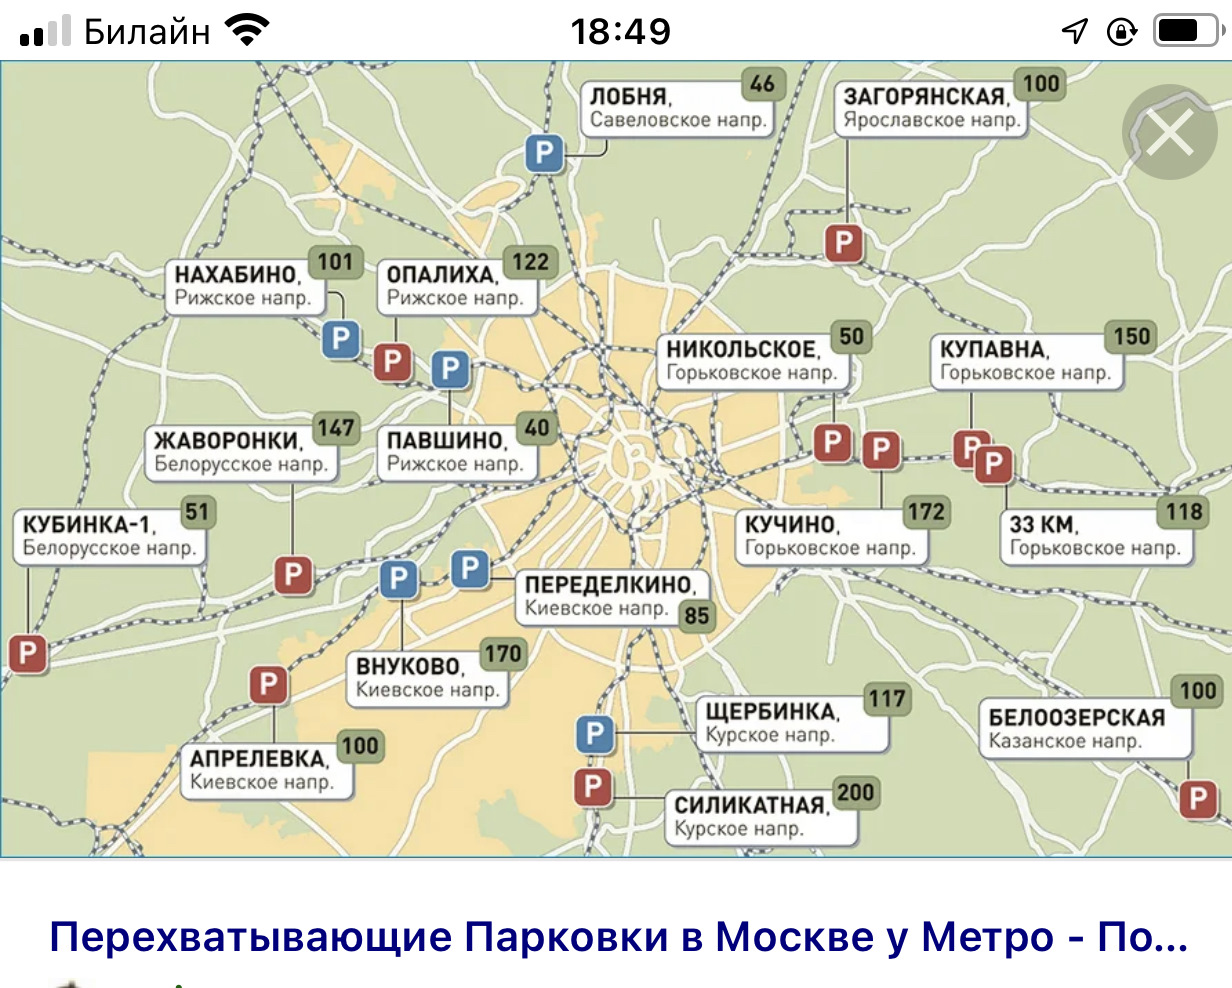 Никольское горьковского. Перехватывающие парковки Москва на карте. Перехватывающие парковки в Москве у метро. Перехватывающие парковки схема.